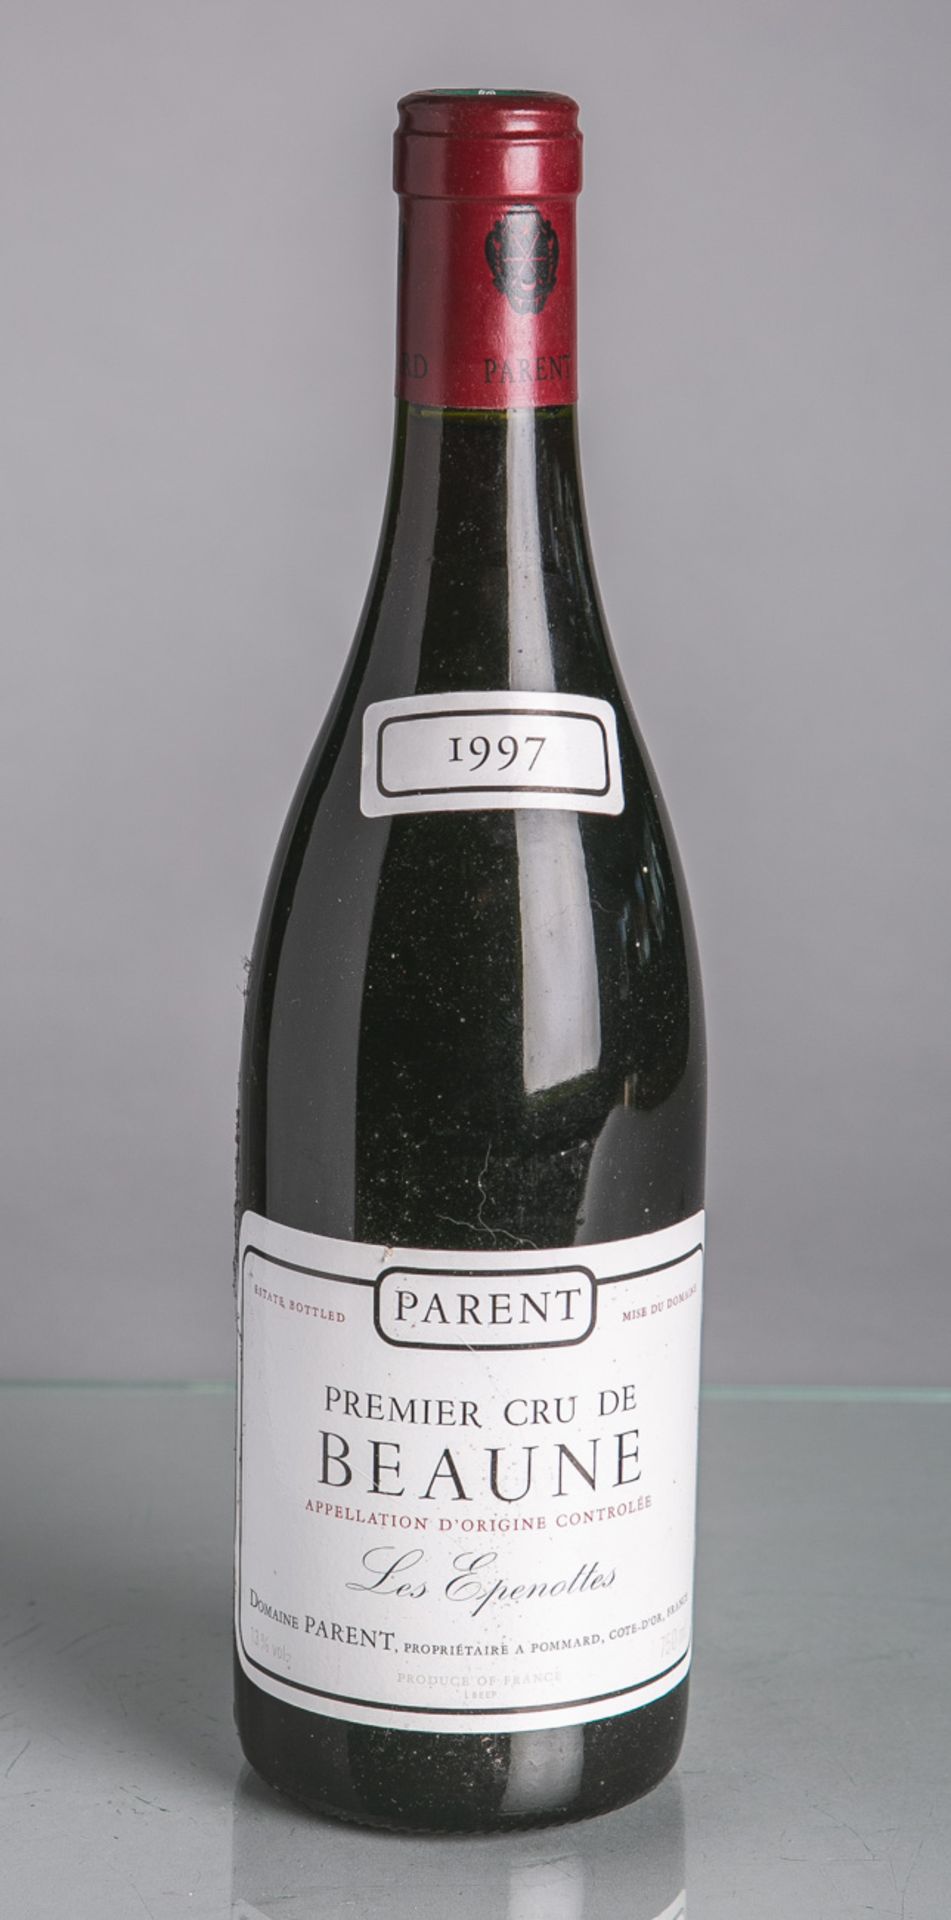 7 Flaschen von Domaine Parent, Premier Cru de Beaune, Les Epenottes (1997), Rotwein, je